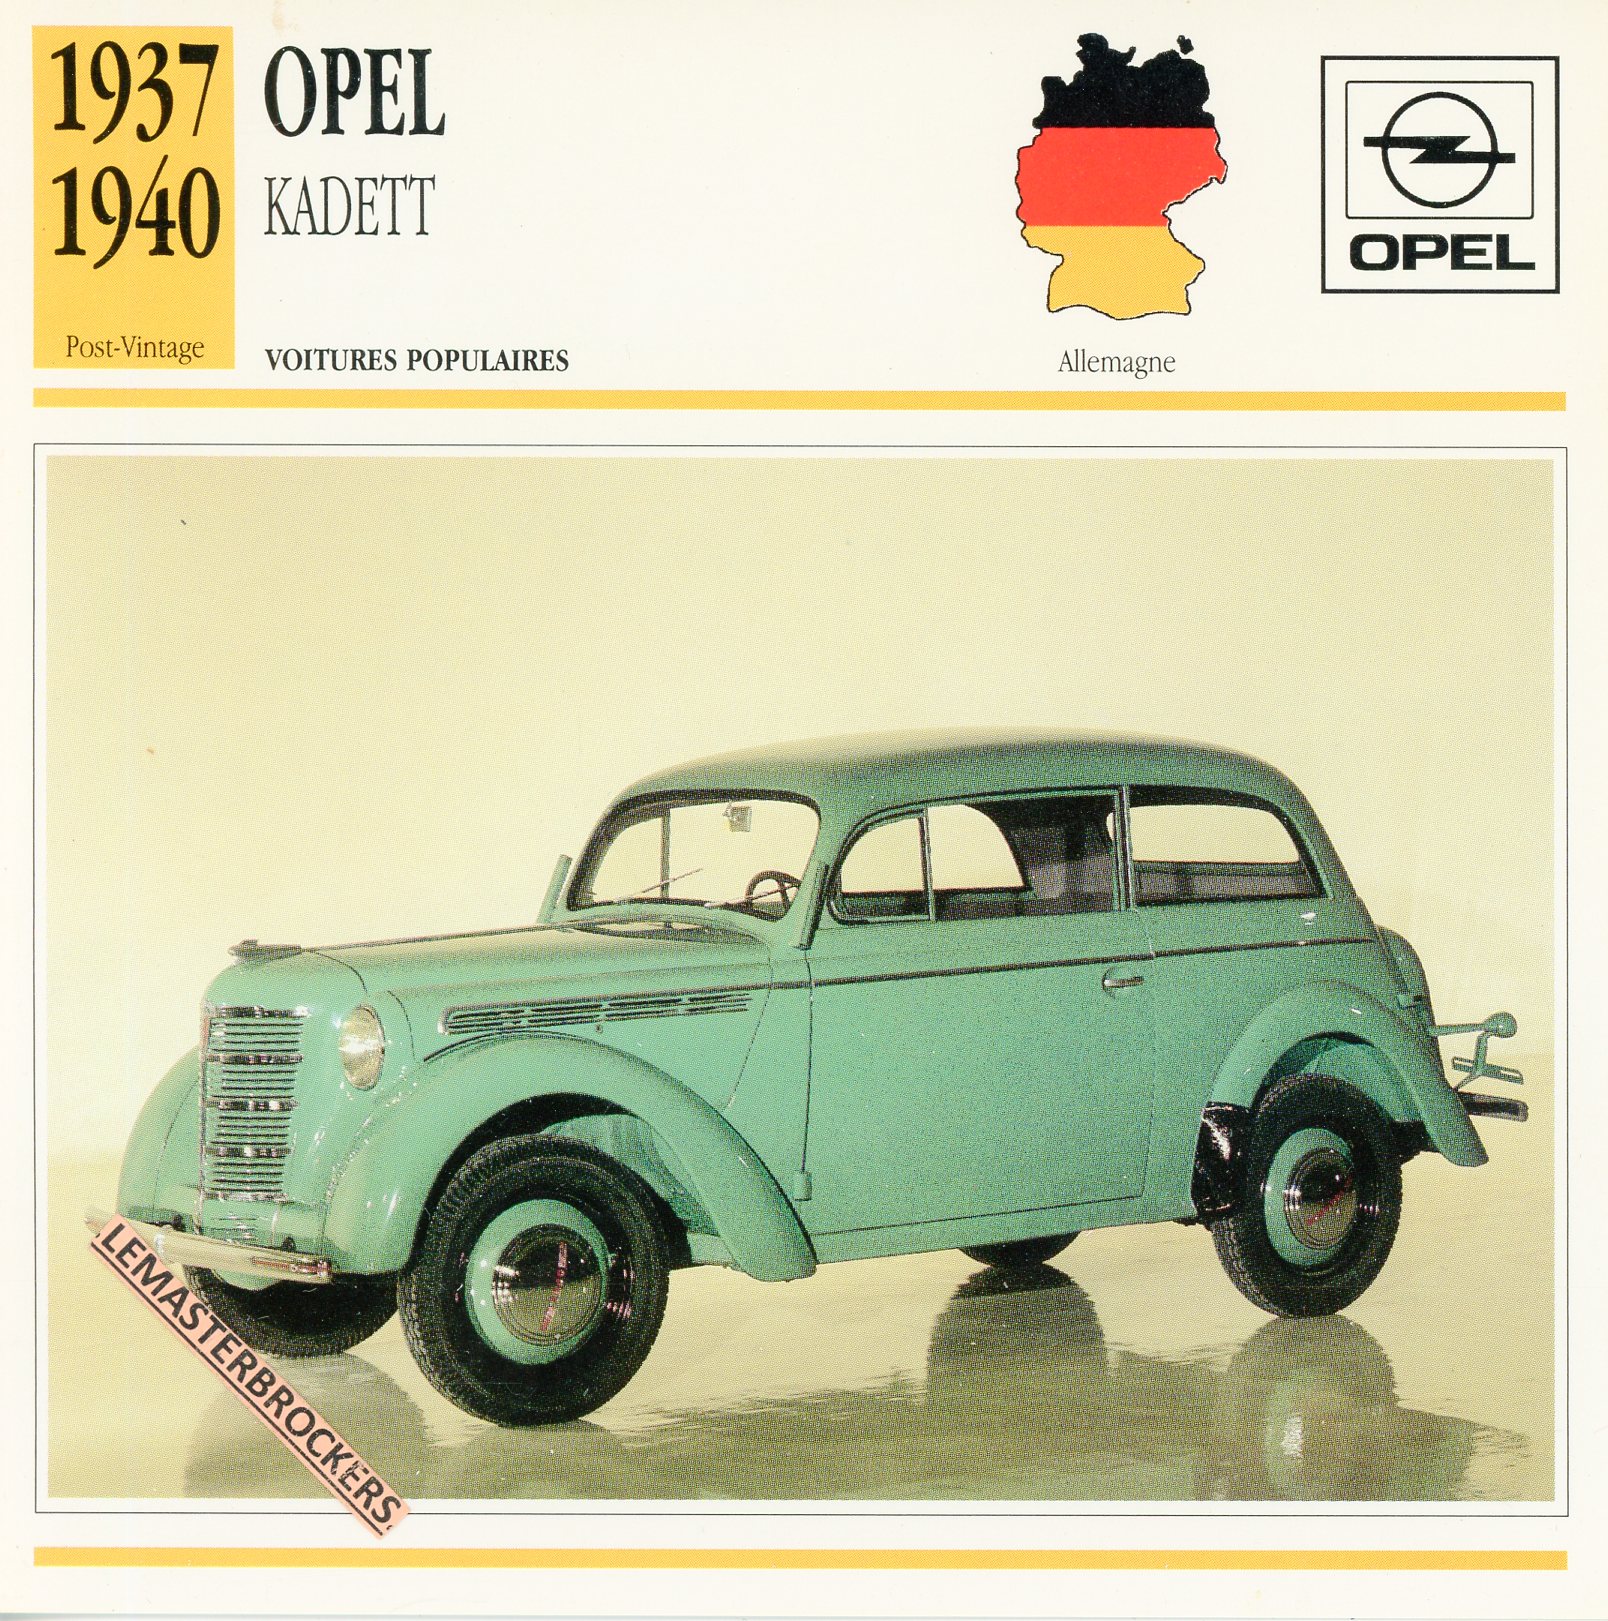 OPEL KADETT 1937 1940 - FICHE AUTO OPEL